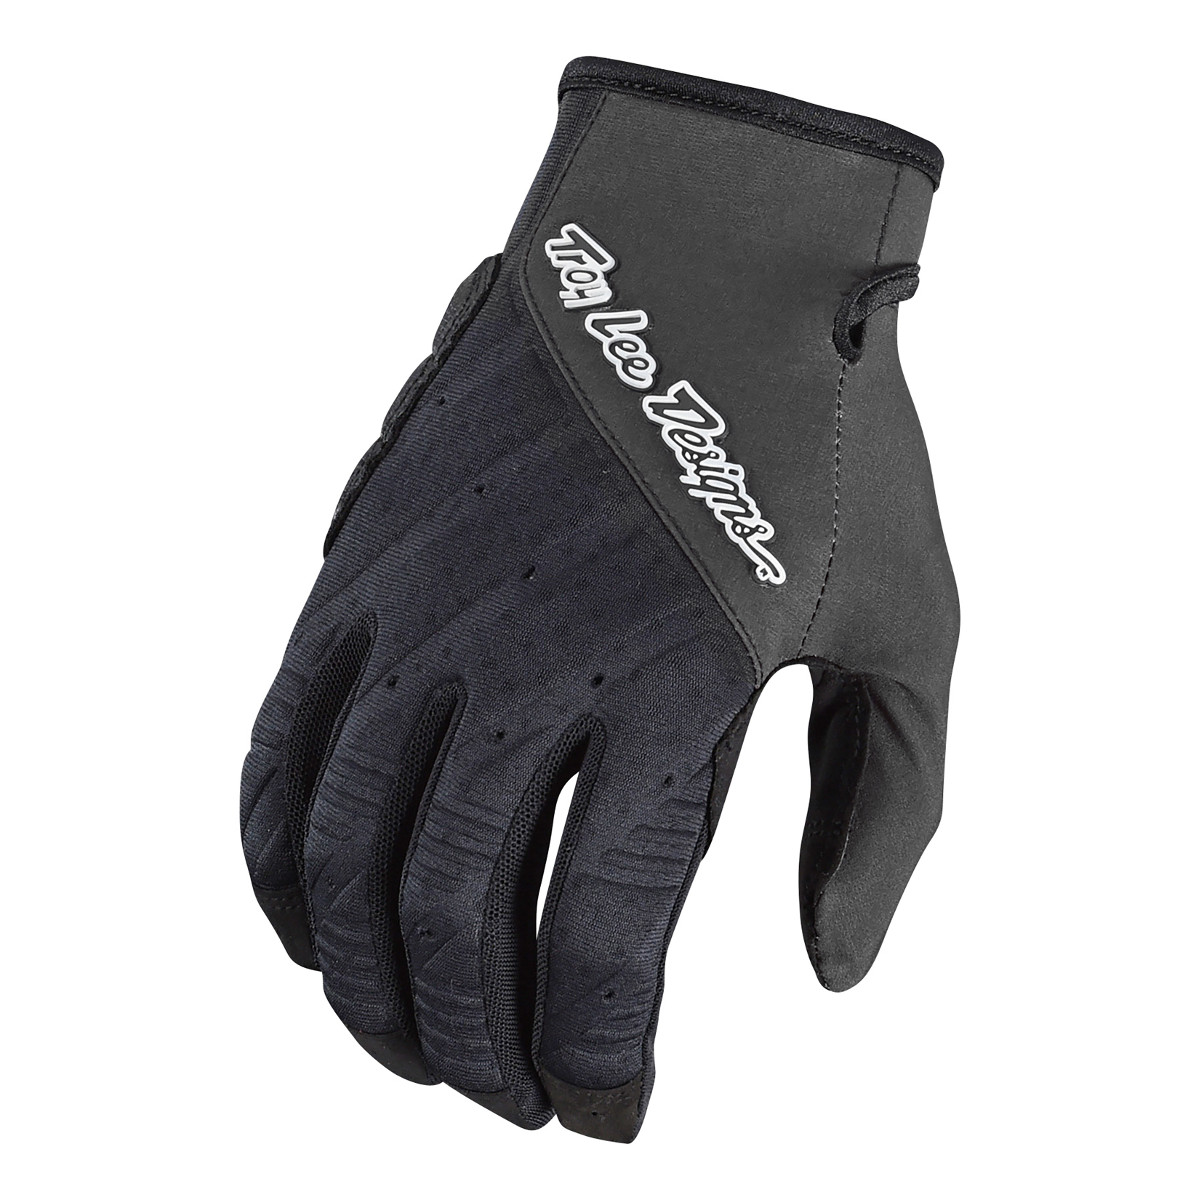 Troy Lee Designs Bike Gloves Ruckus Black